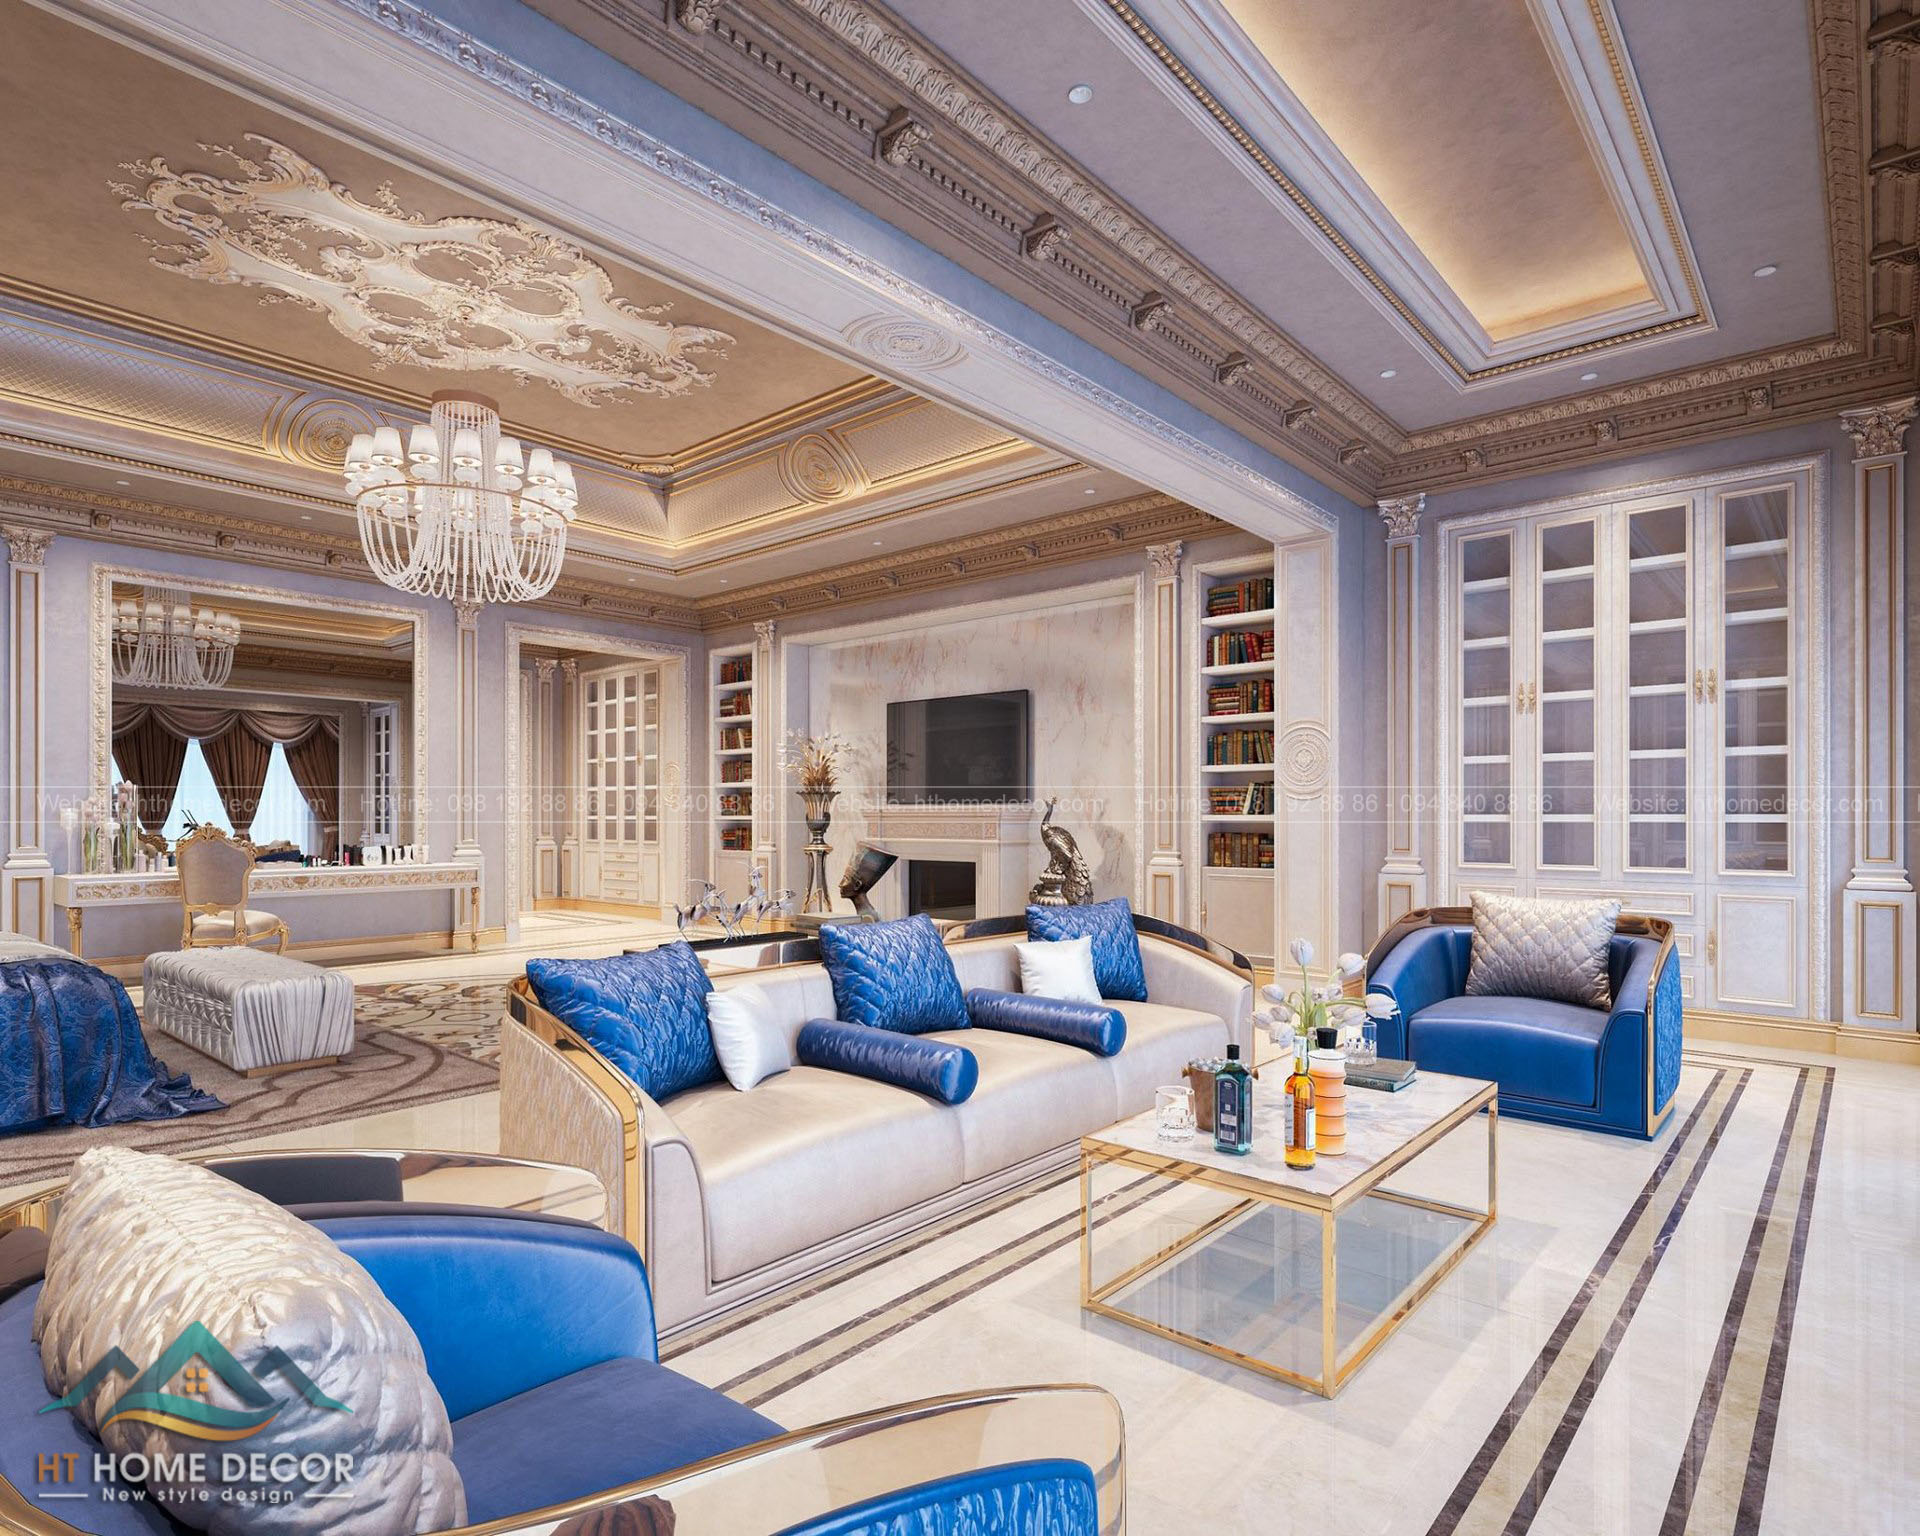 Gam màu sang trọng quý phái được sắp xếp hợp lí. Với bộ ghế sofa rộng rãi, gối tựa xanh dương nhấn nhá cho không gian biệt thự kiểu Anh sinh động. 